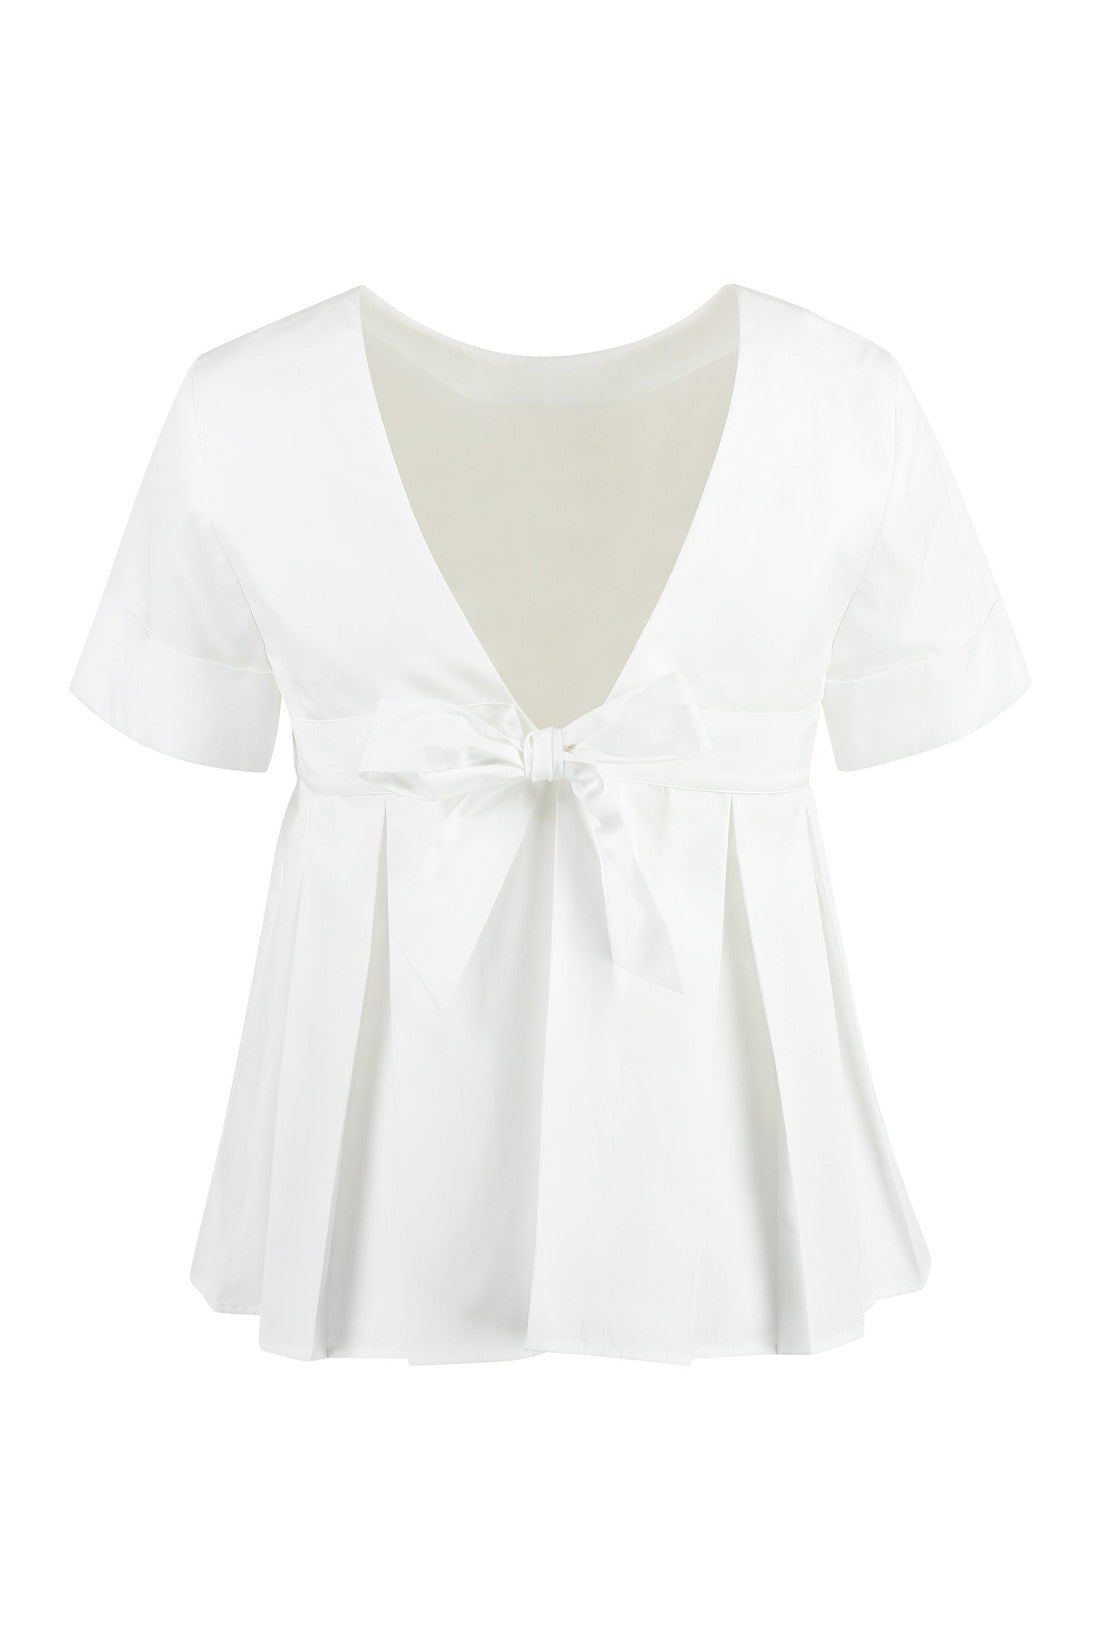 Piralo-OUTLET-SALE-Cotton blouse-ARCHIVIST